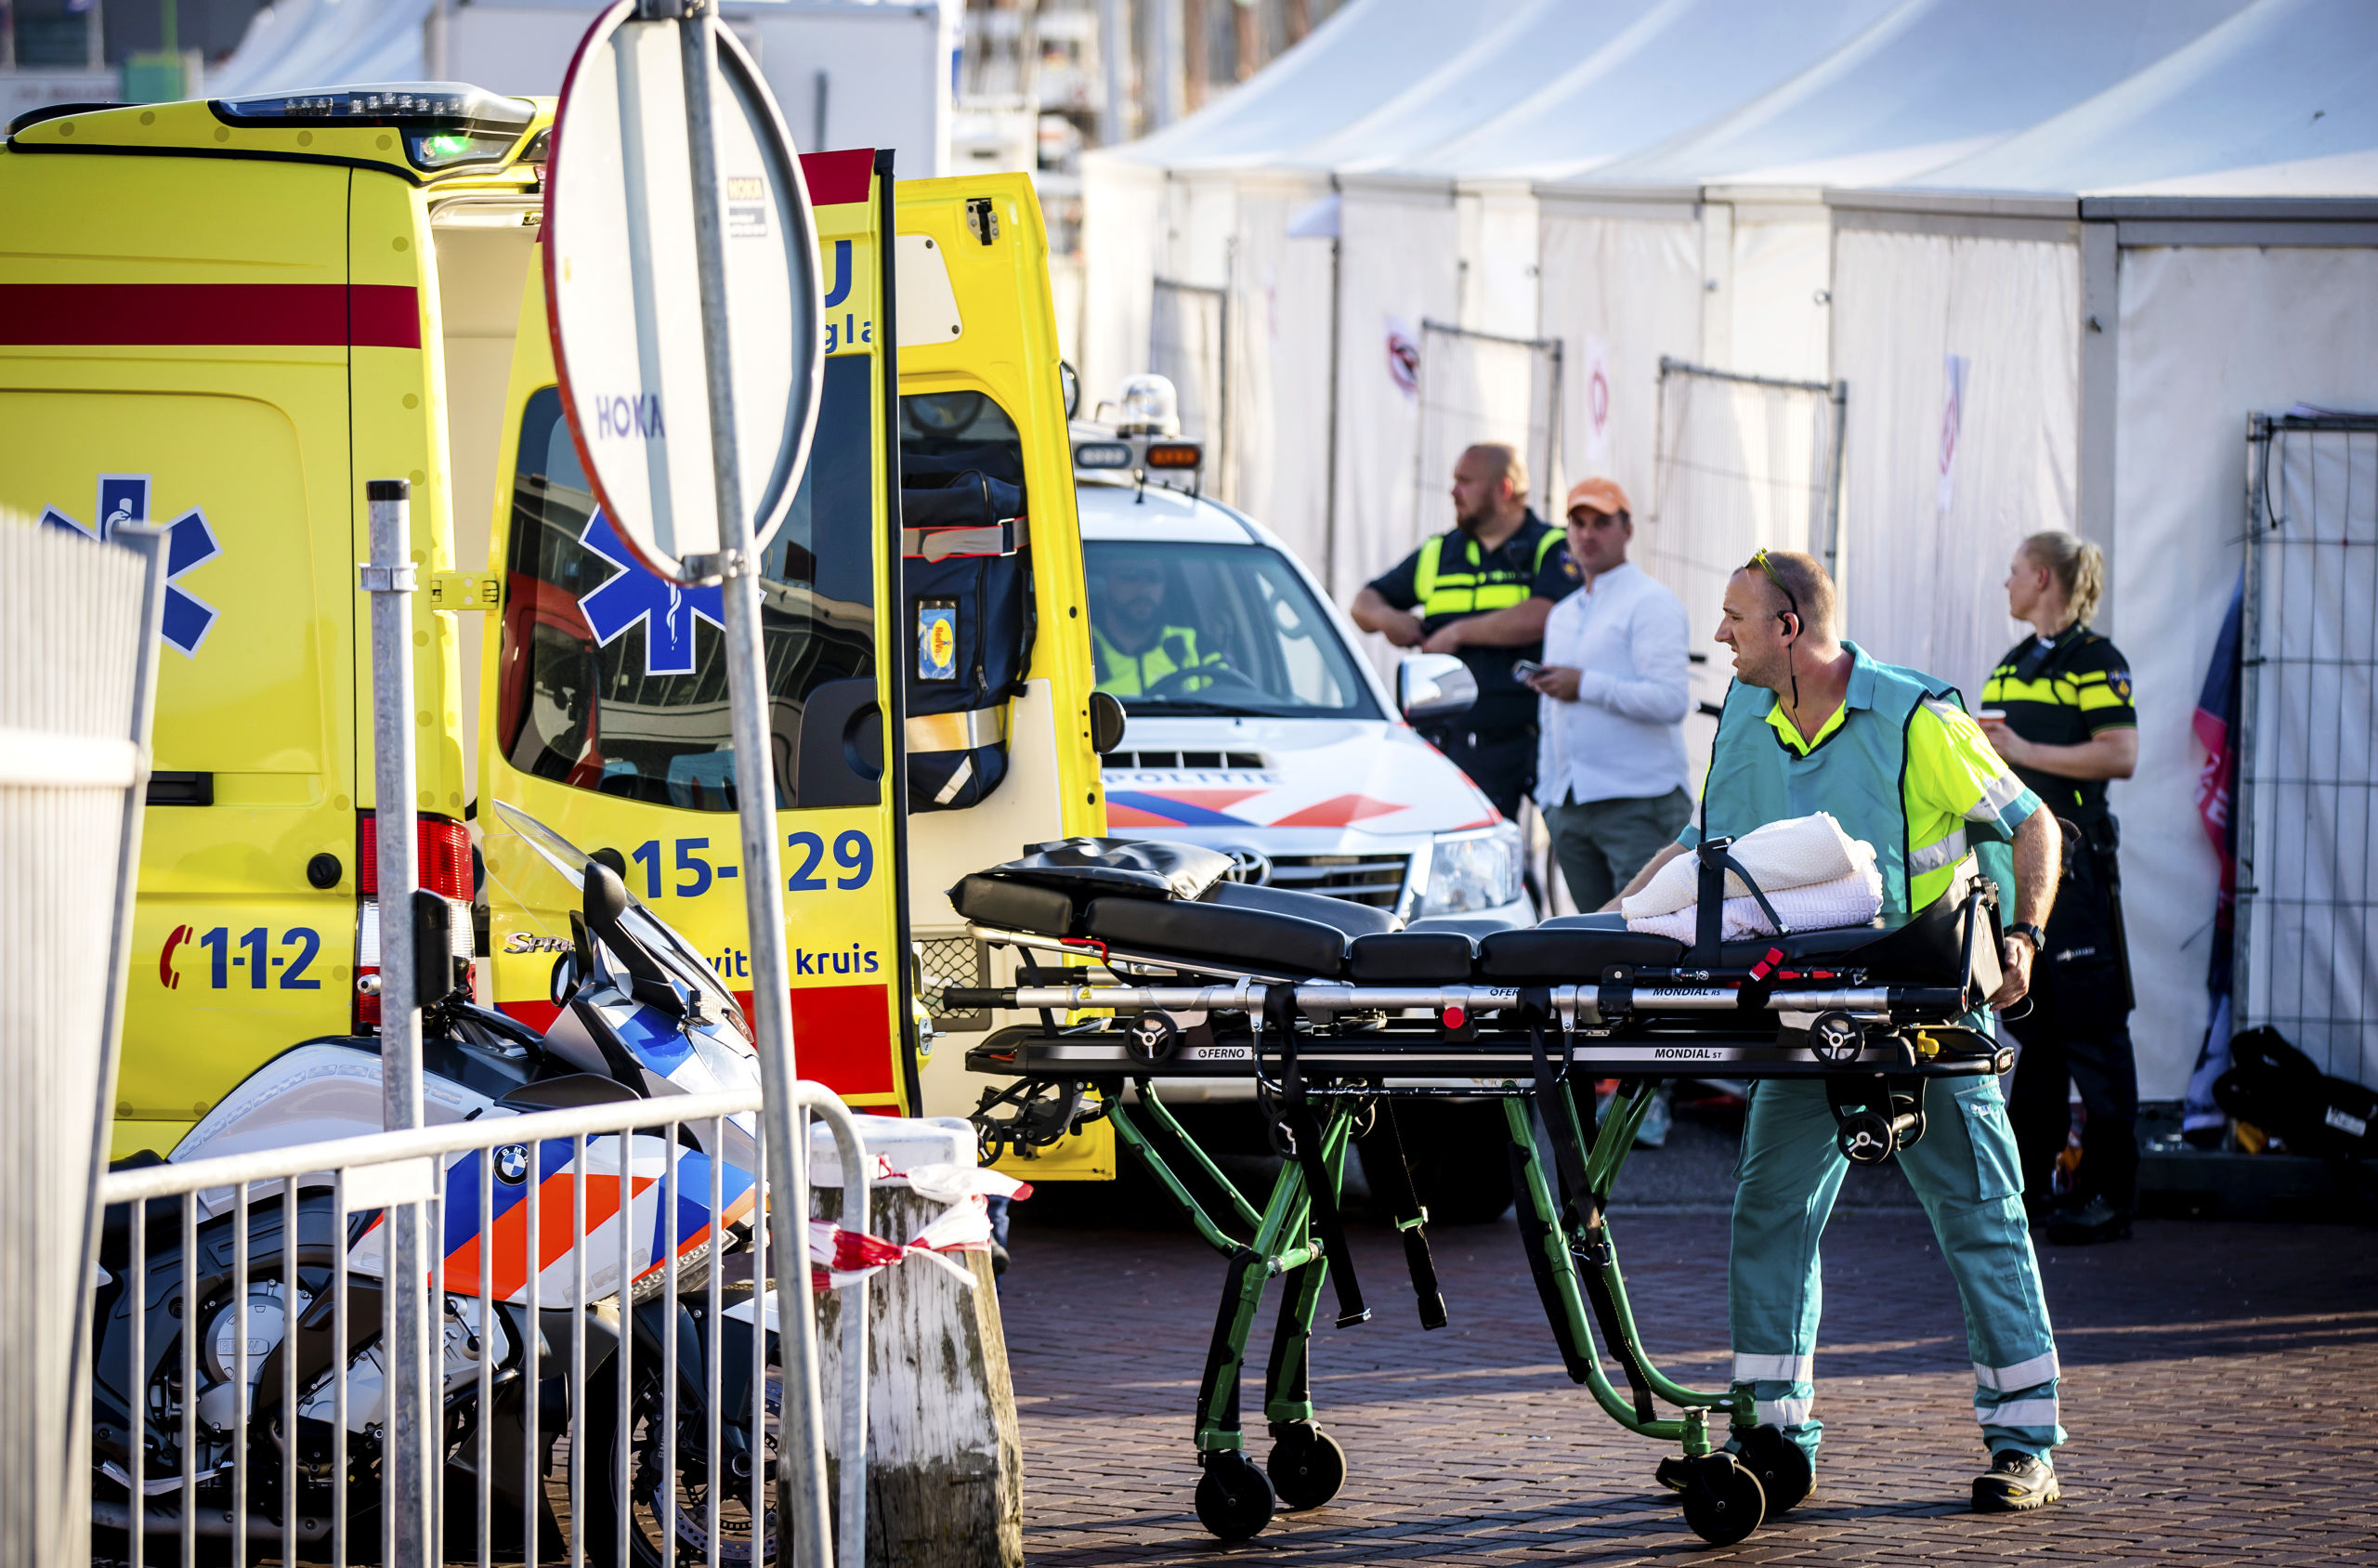 2018-06-28 20:00:44 SCHEVENINGEN - Hulpdiensten aan het werk in de haven van Scheveningen, waar een aanvaring tussen twee boten heeft plaatsgevonden. De botsing heeft zeker een opvarende het leven gekost. ANP BART MAAT